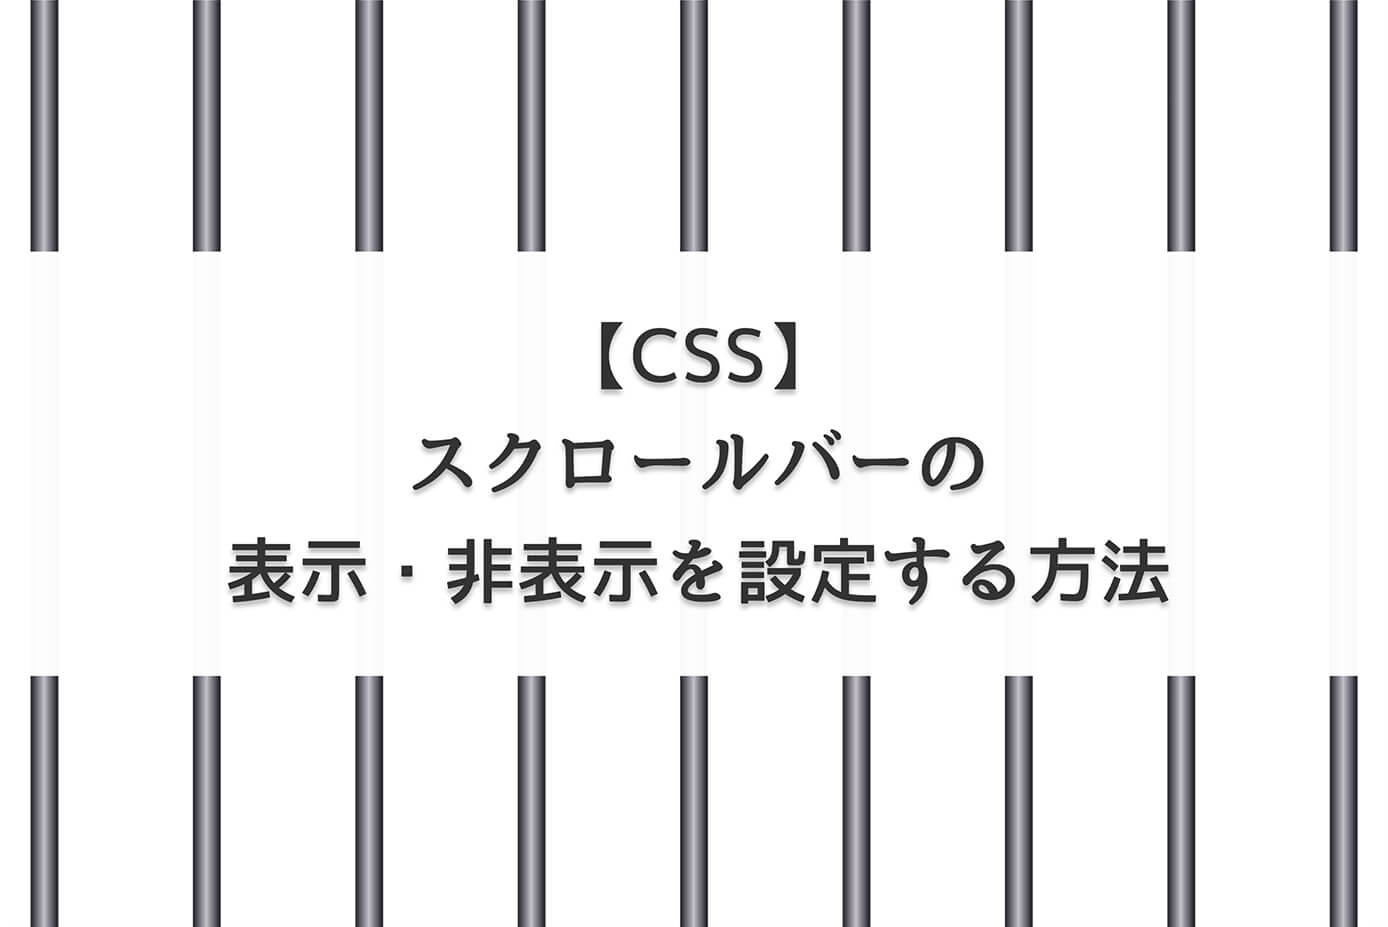 【CSS】スクロールバーの表示・非表示を設定する方法